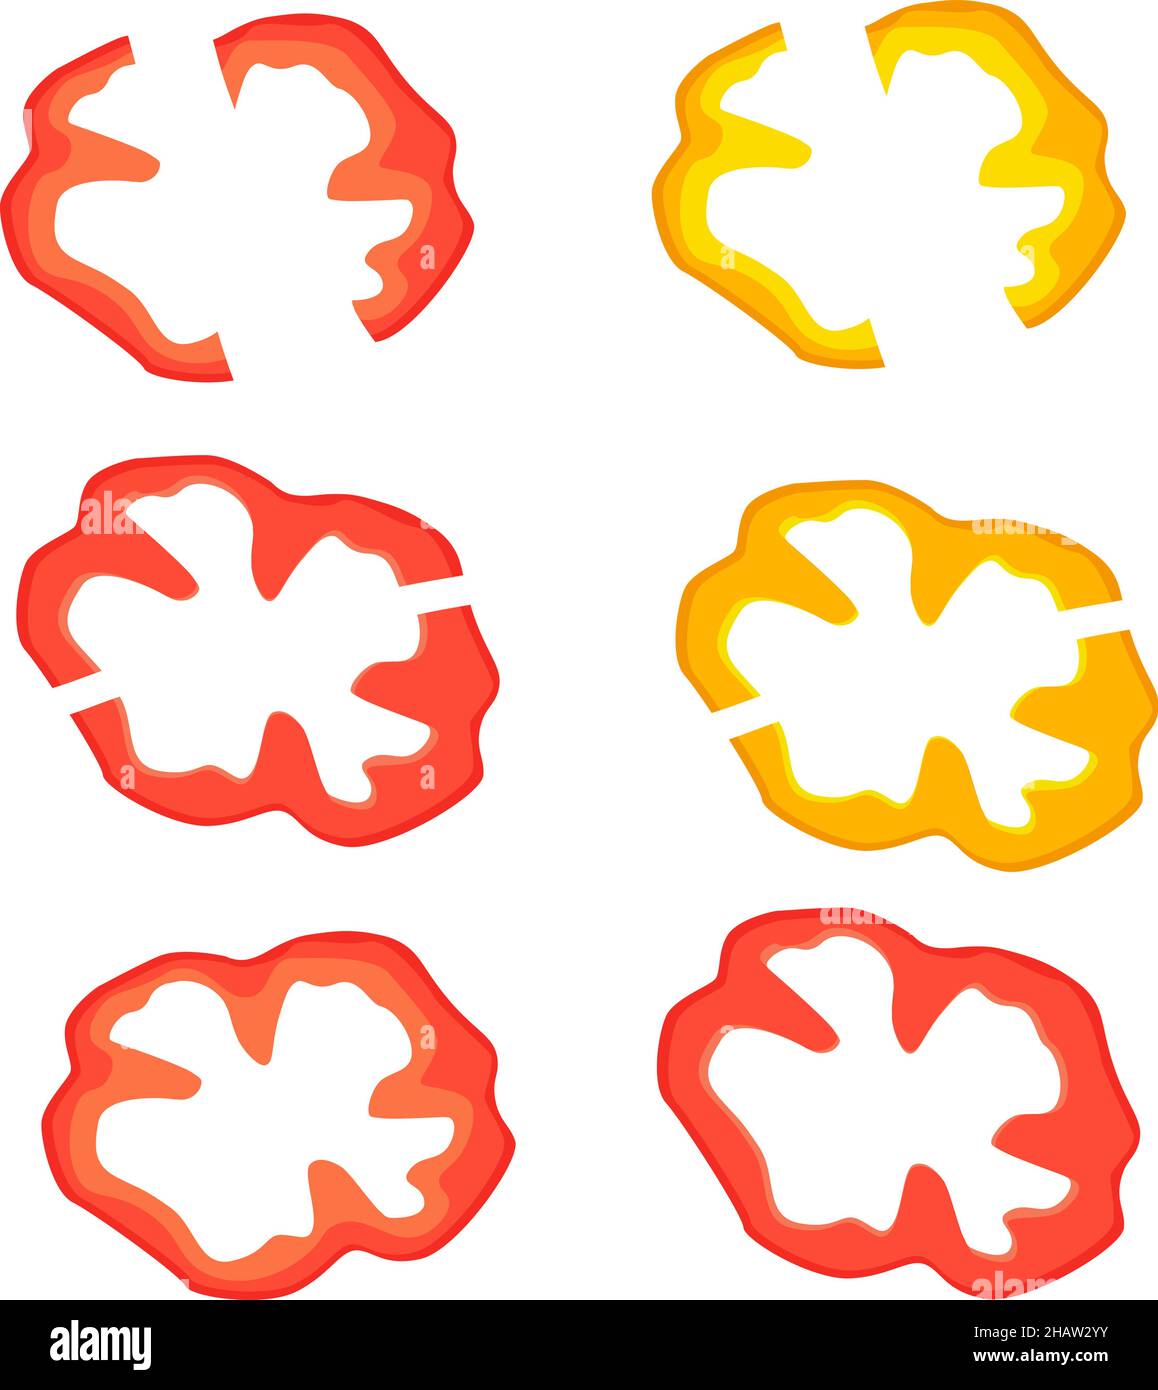 Des tranches de paprika fraîches rouges et jaunes dessinant de façon isolée et plate sur un fond transparent Illustration de Vecteur